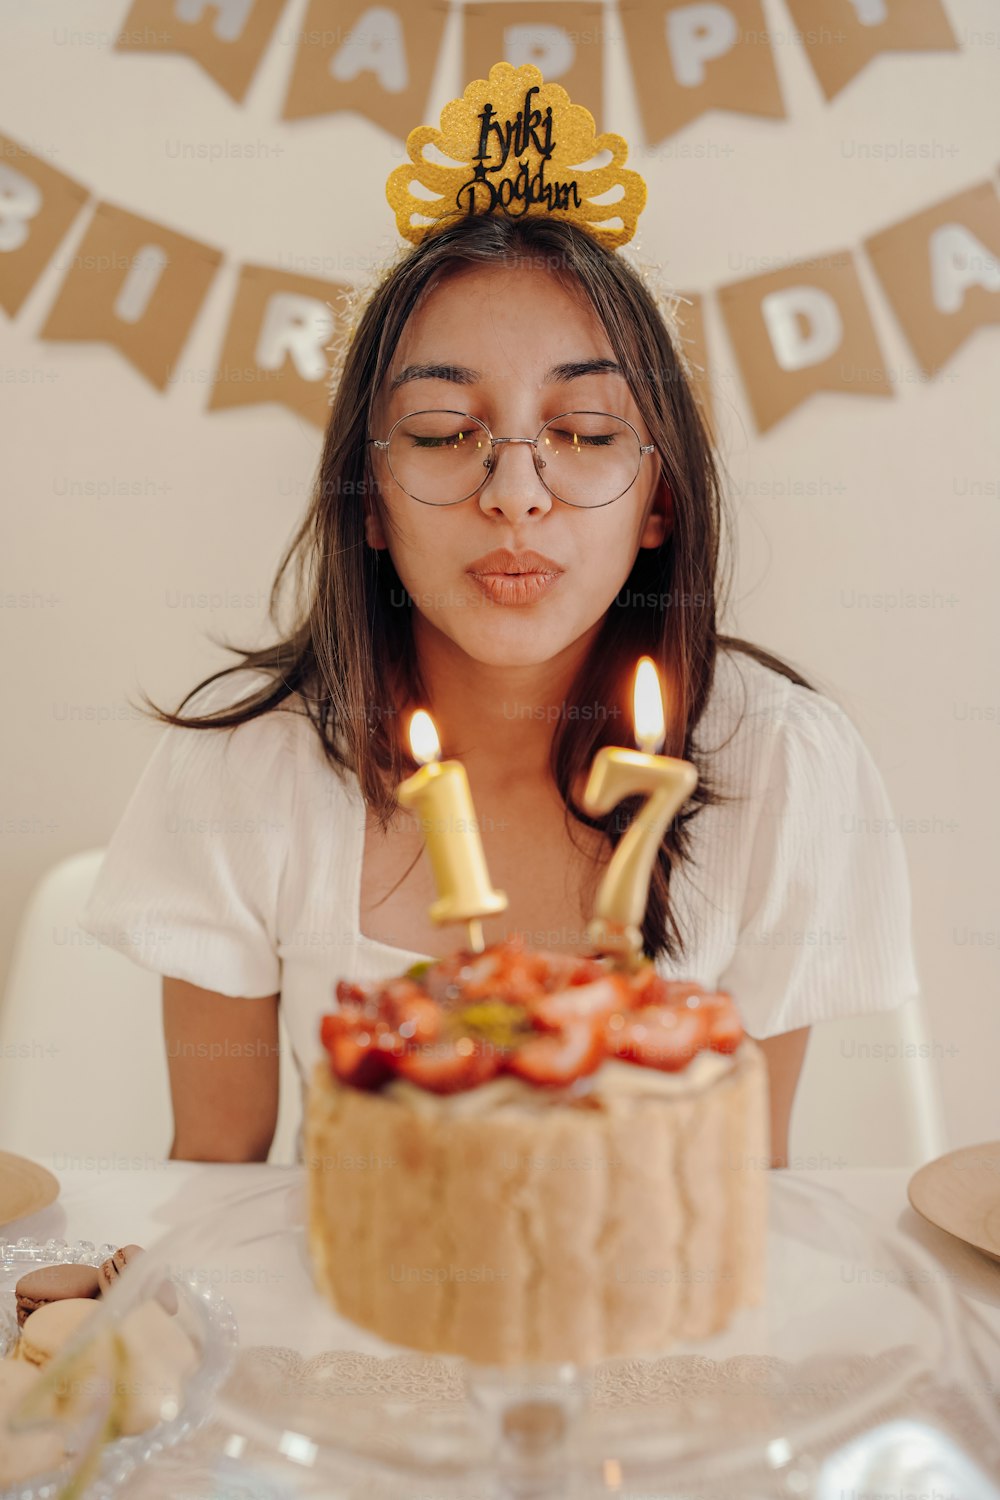 Una donna che spegne le candeline su una torta foto – Torta di compleanno  Immagine su Unsplash